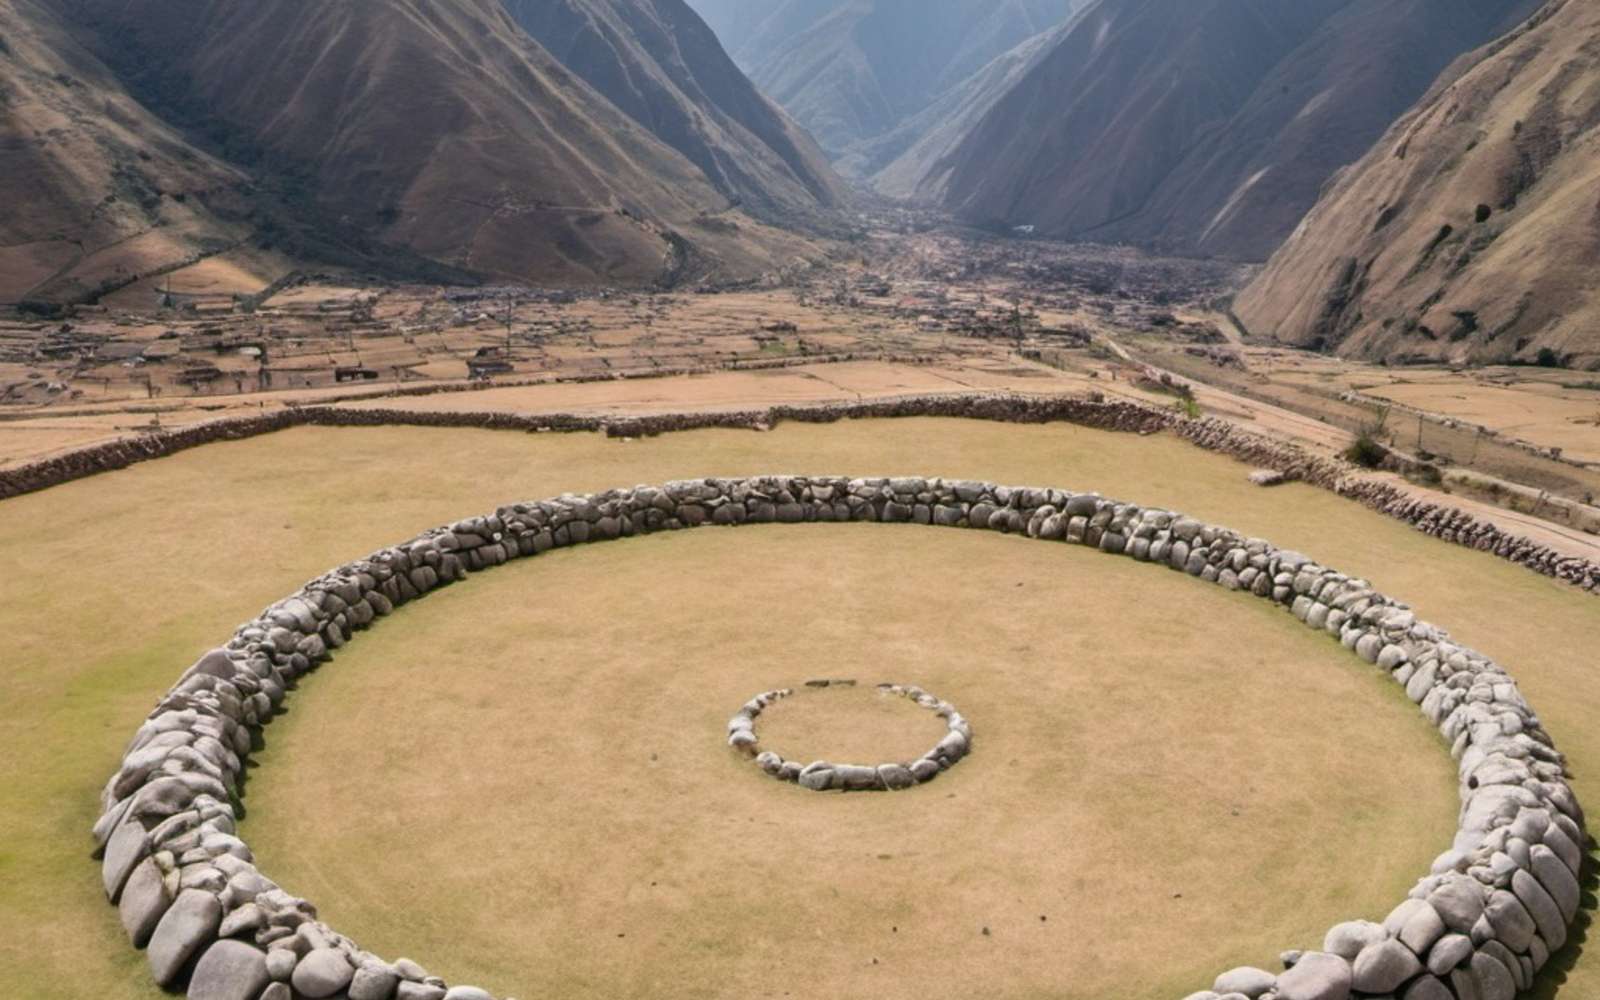 Un cercle de mégalithes construit il y a 5 000 ans découvert dans les Andes